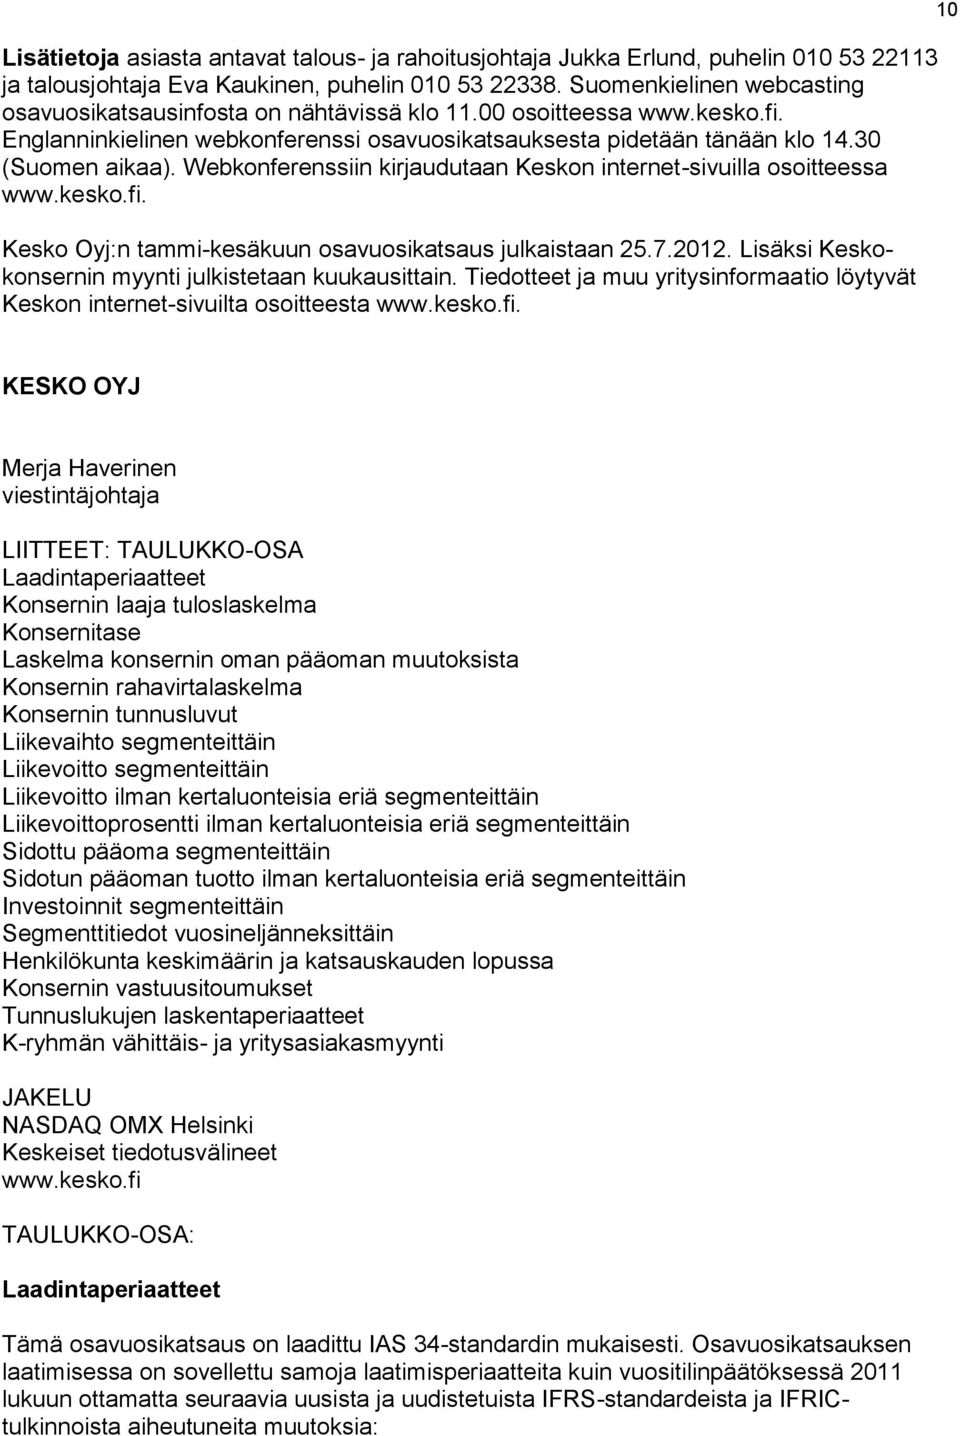 Webkonferenssiin kirjaudutaan Keskon internet-sivuilla osoitteessa www.kesko.fi. Kesko Oyj:n tammi-kesäkuun osavuosikatsaus julkaistaan 25.7.2012.